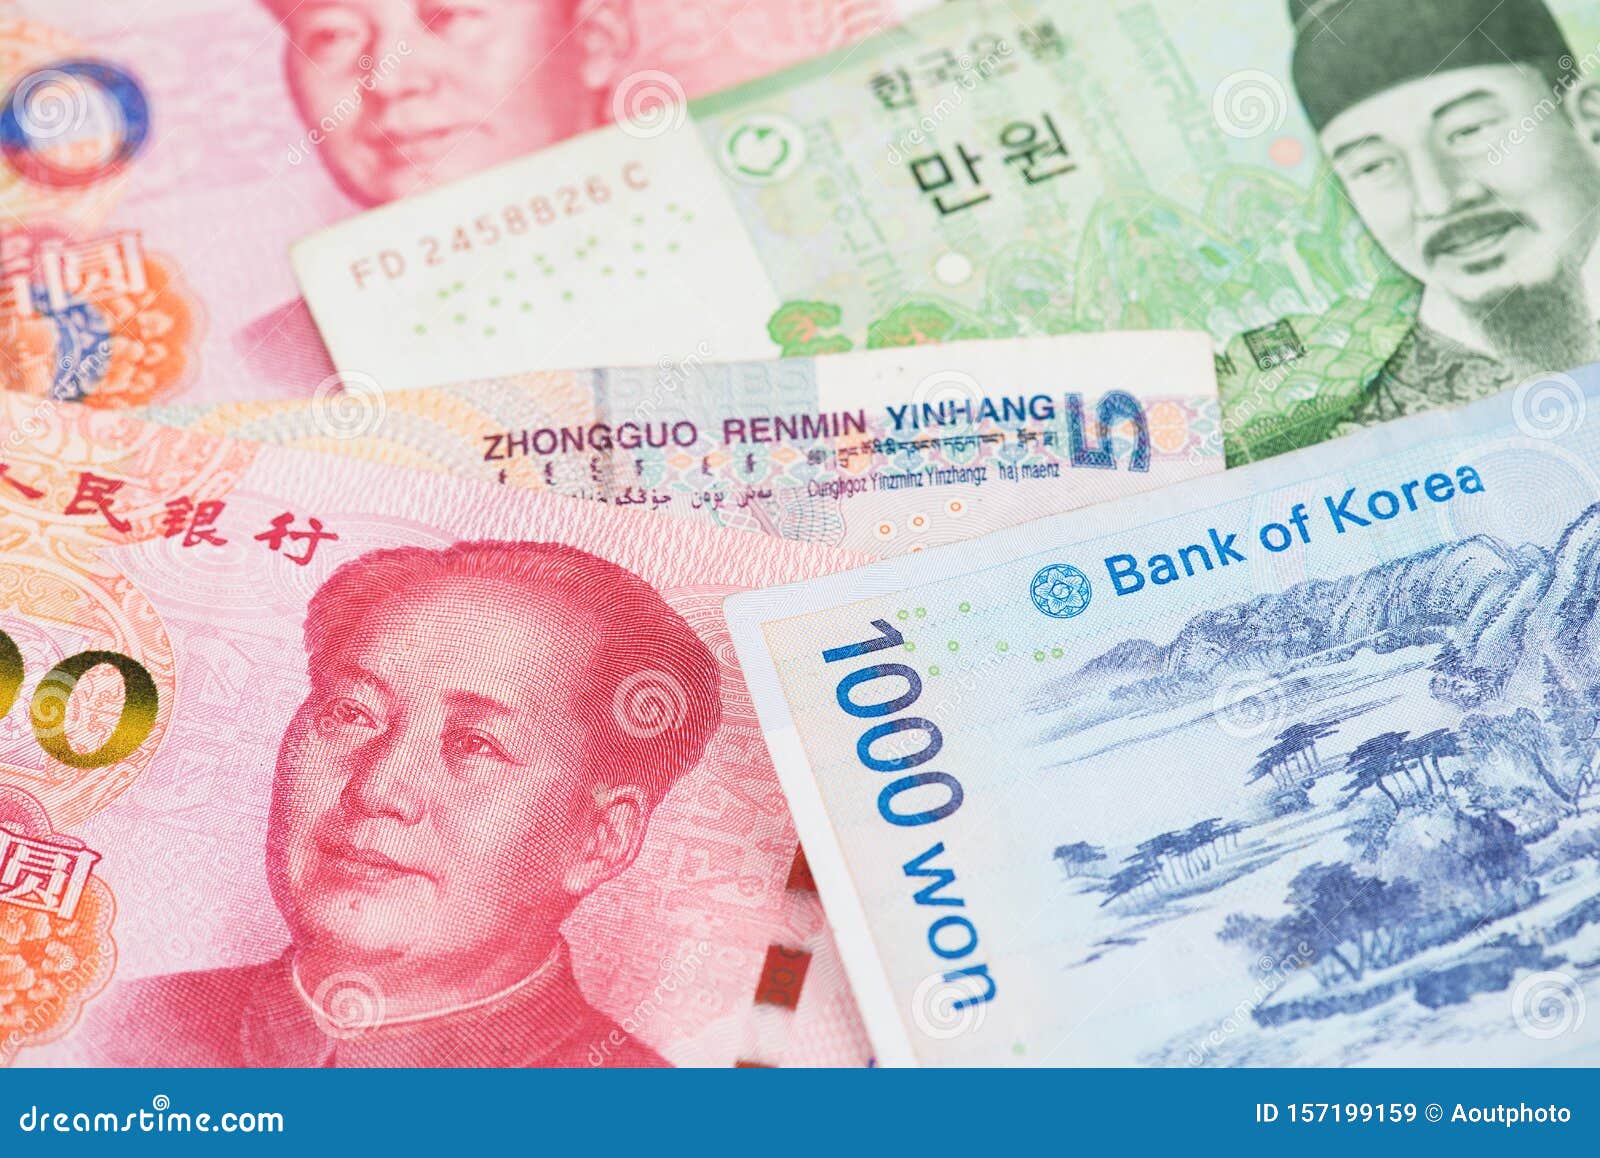 Южная корея вона к рублю на сегодня. Китайский юань. Китайский юань и корейский вон. Юань корейский купюра. Renminbi Yuan.